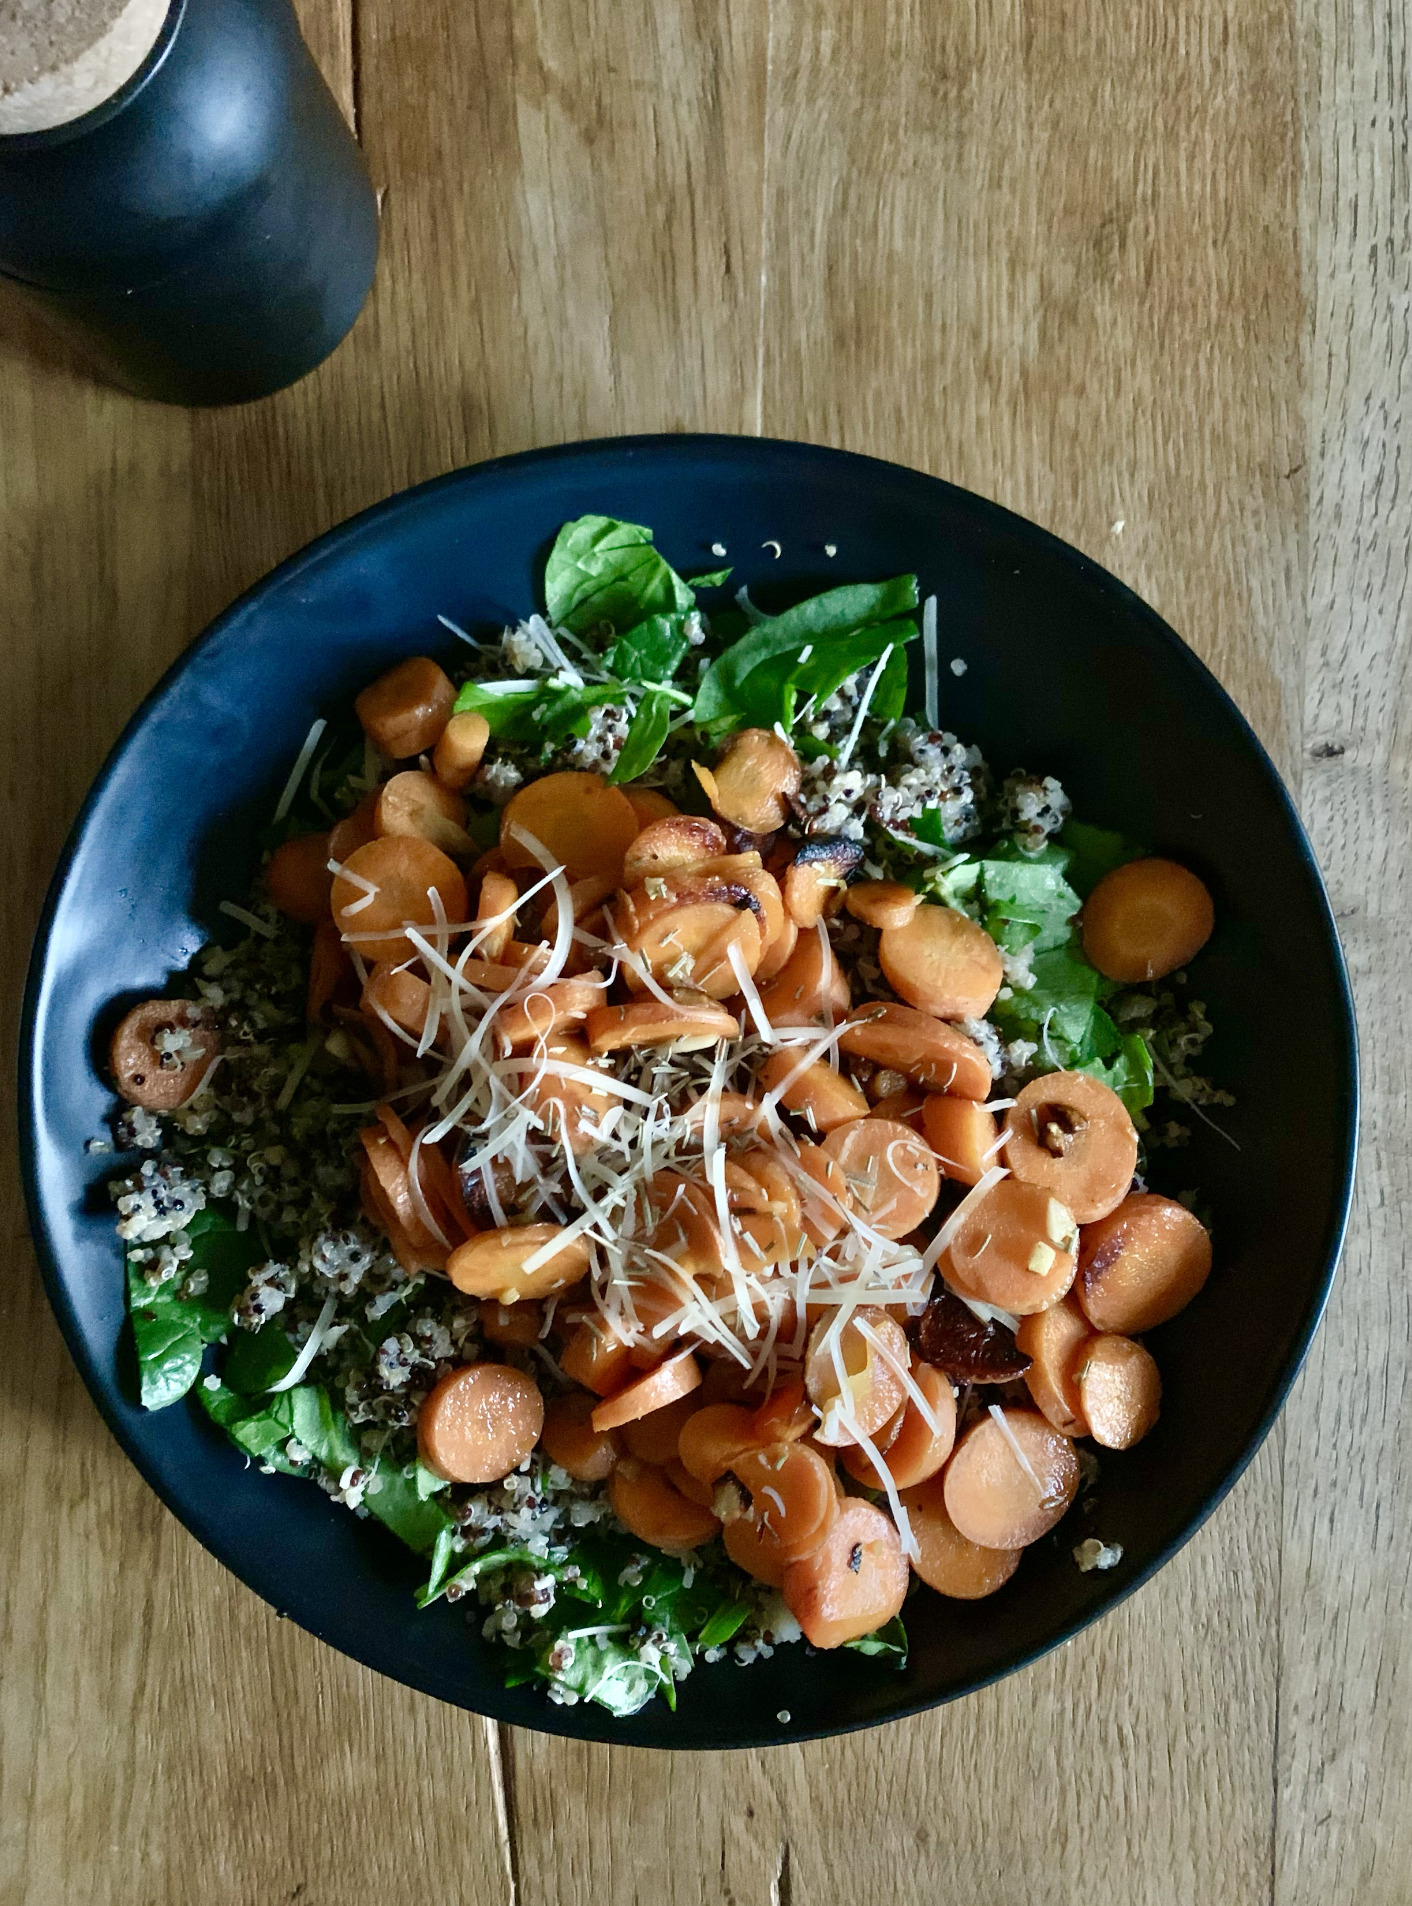 Lauren Liess' Warm Carrot quinoa bowl